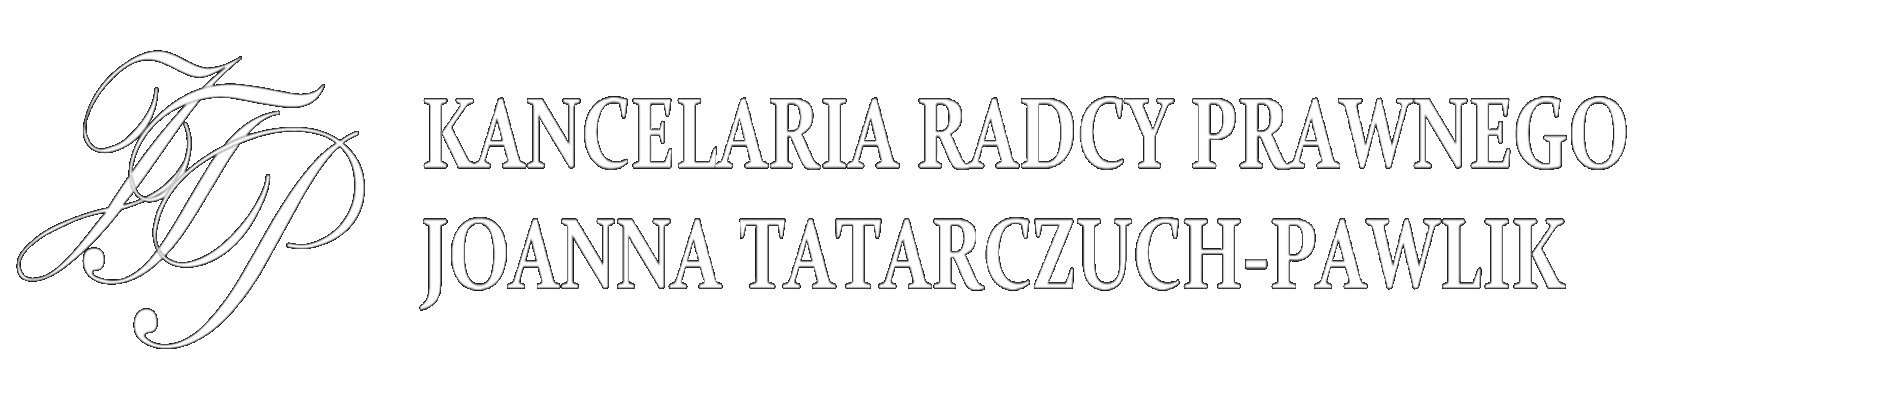 KANCELARIA RADCY PRAWNEGO JOANNA TATARCZUCH-PAWLIK